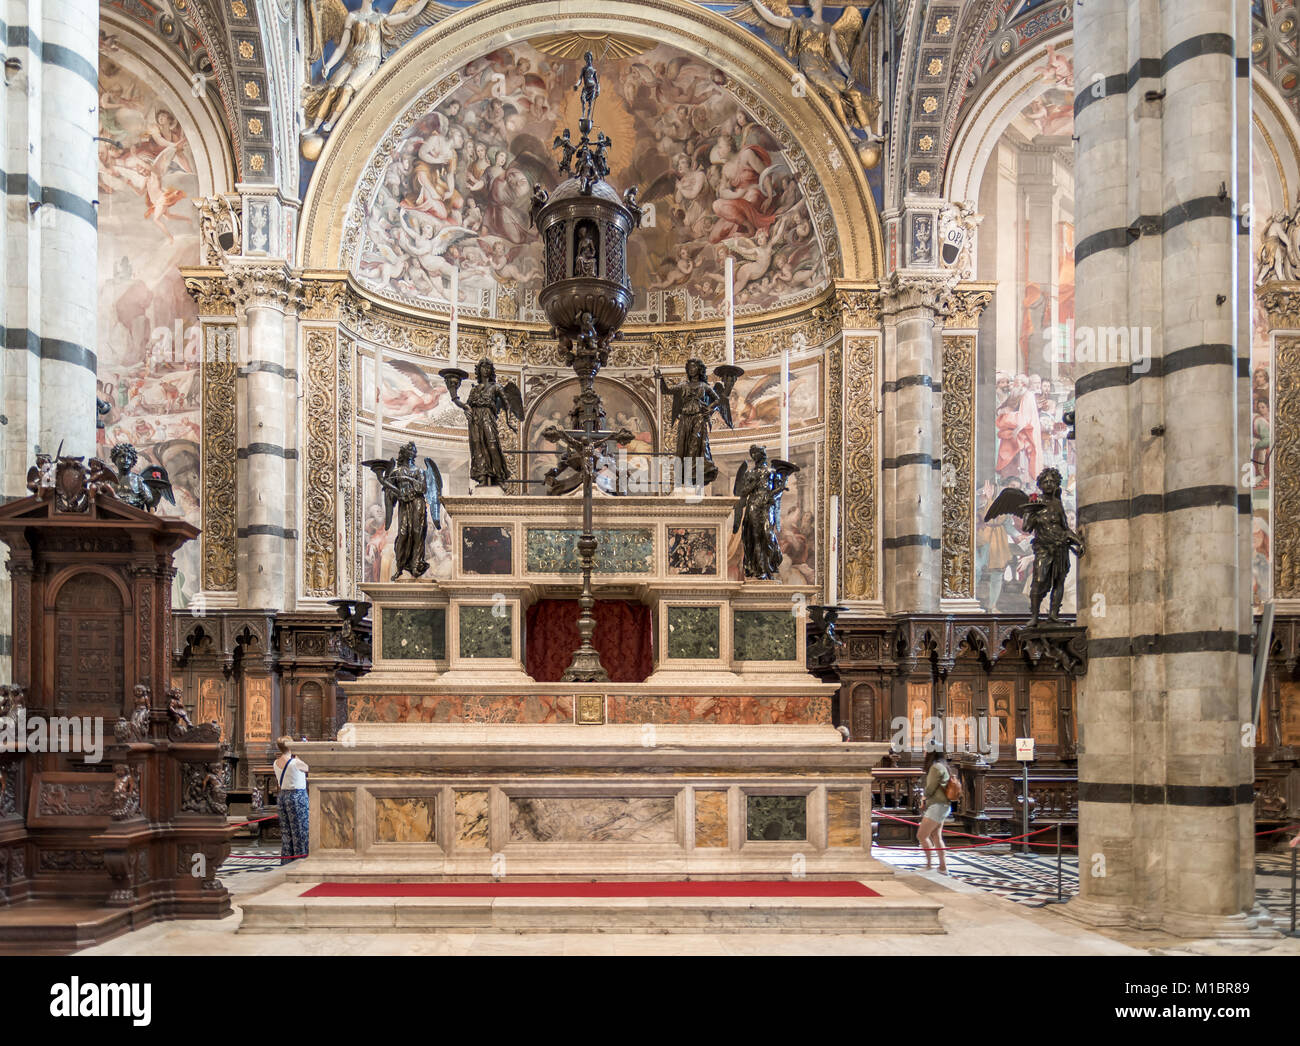 Das Pfarrhaus in der Kathedrale von Siena, ist durch den großen Altar aus Marmor von Baldassare Peruzzi 1532 Geschehen dominiert. Stockfoto